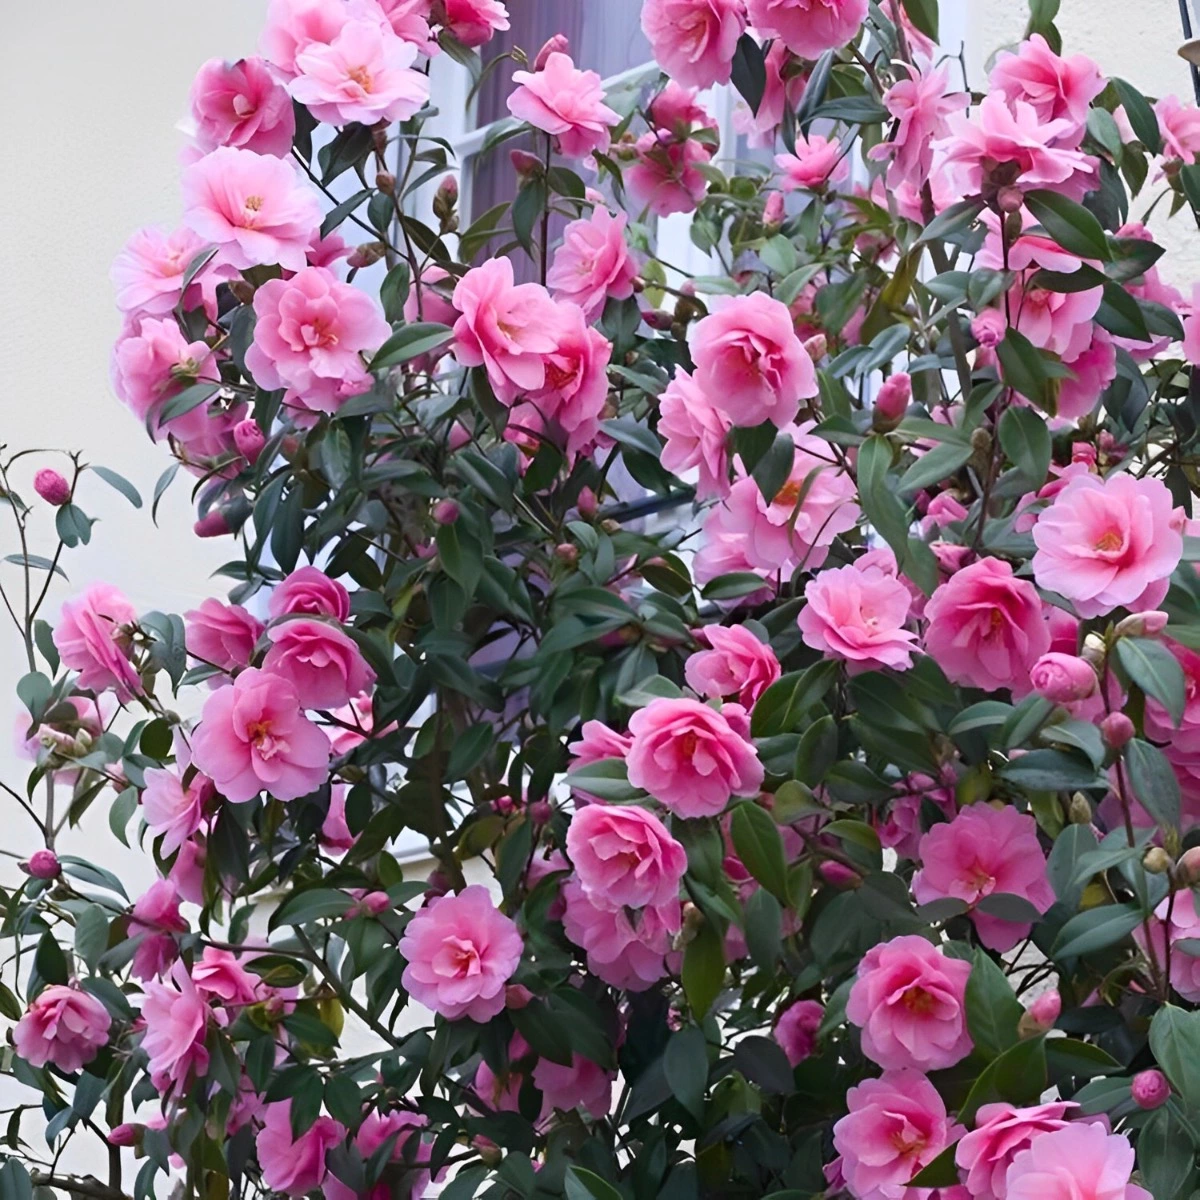 arbuste abondamment fleuri de camelia rose